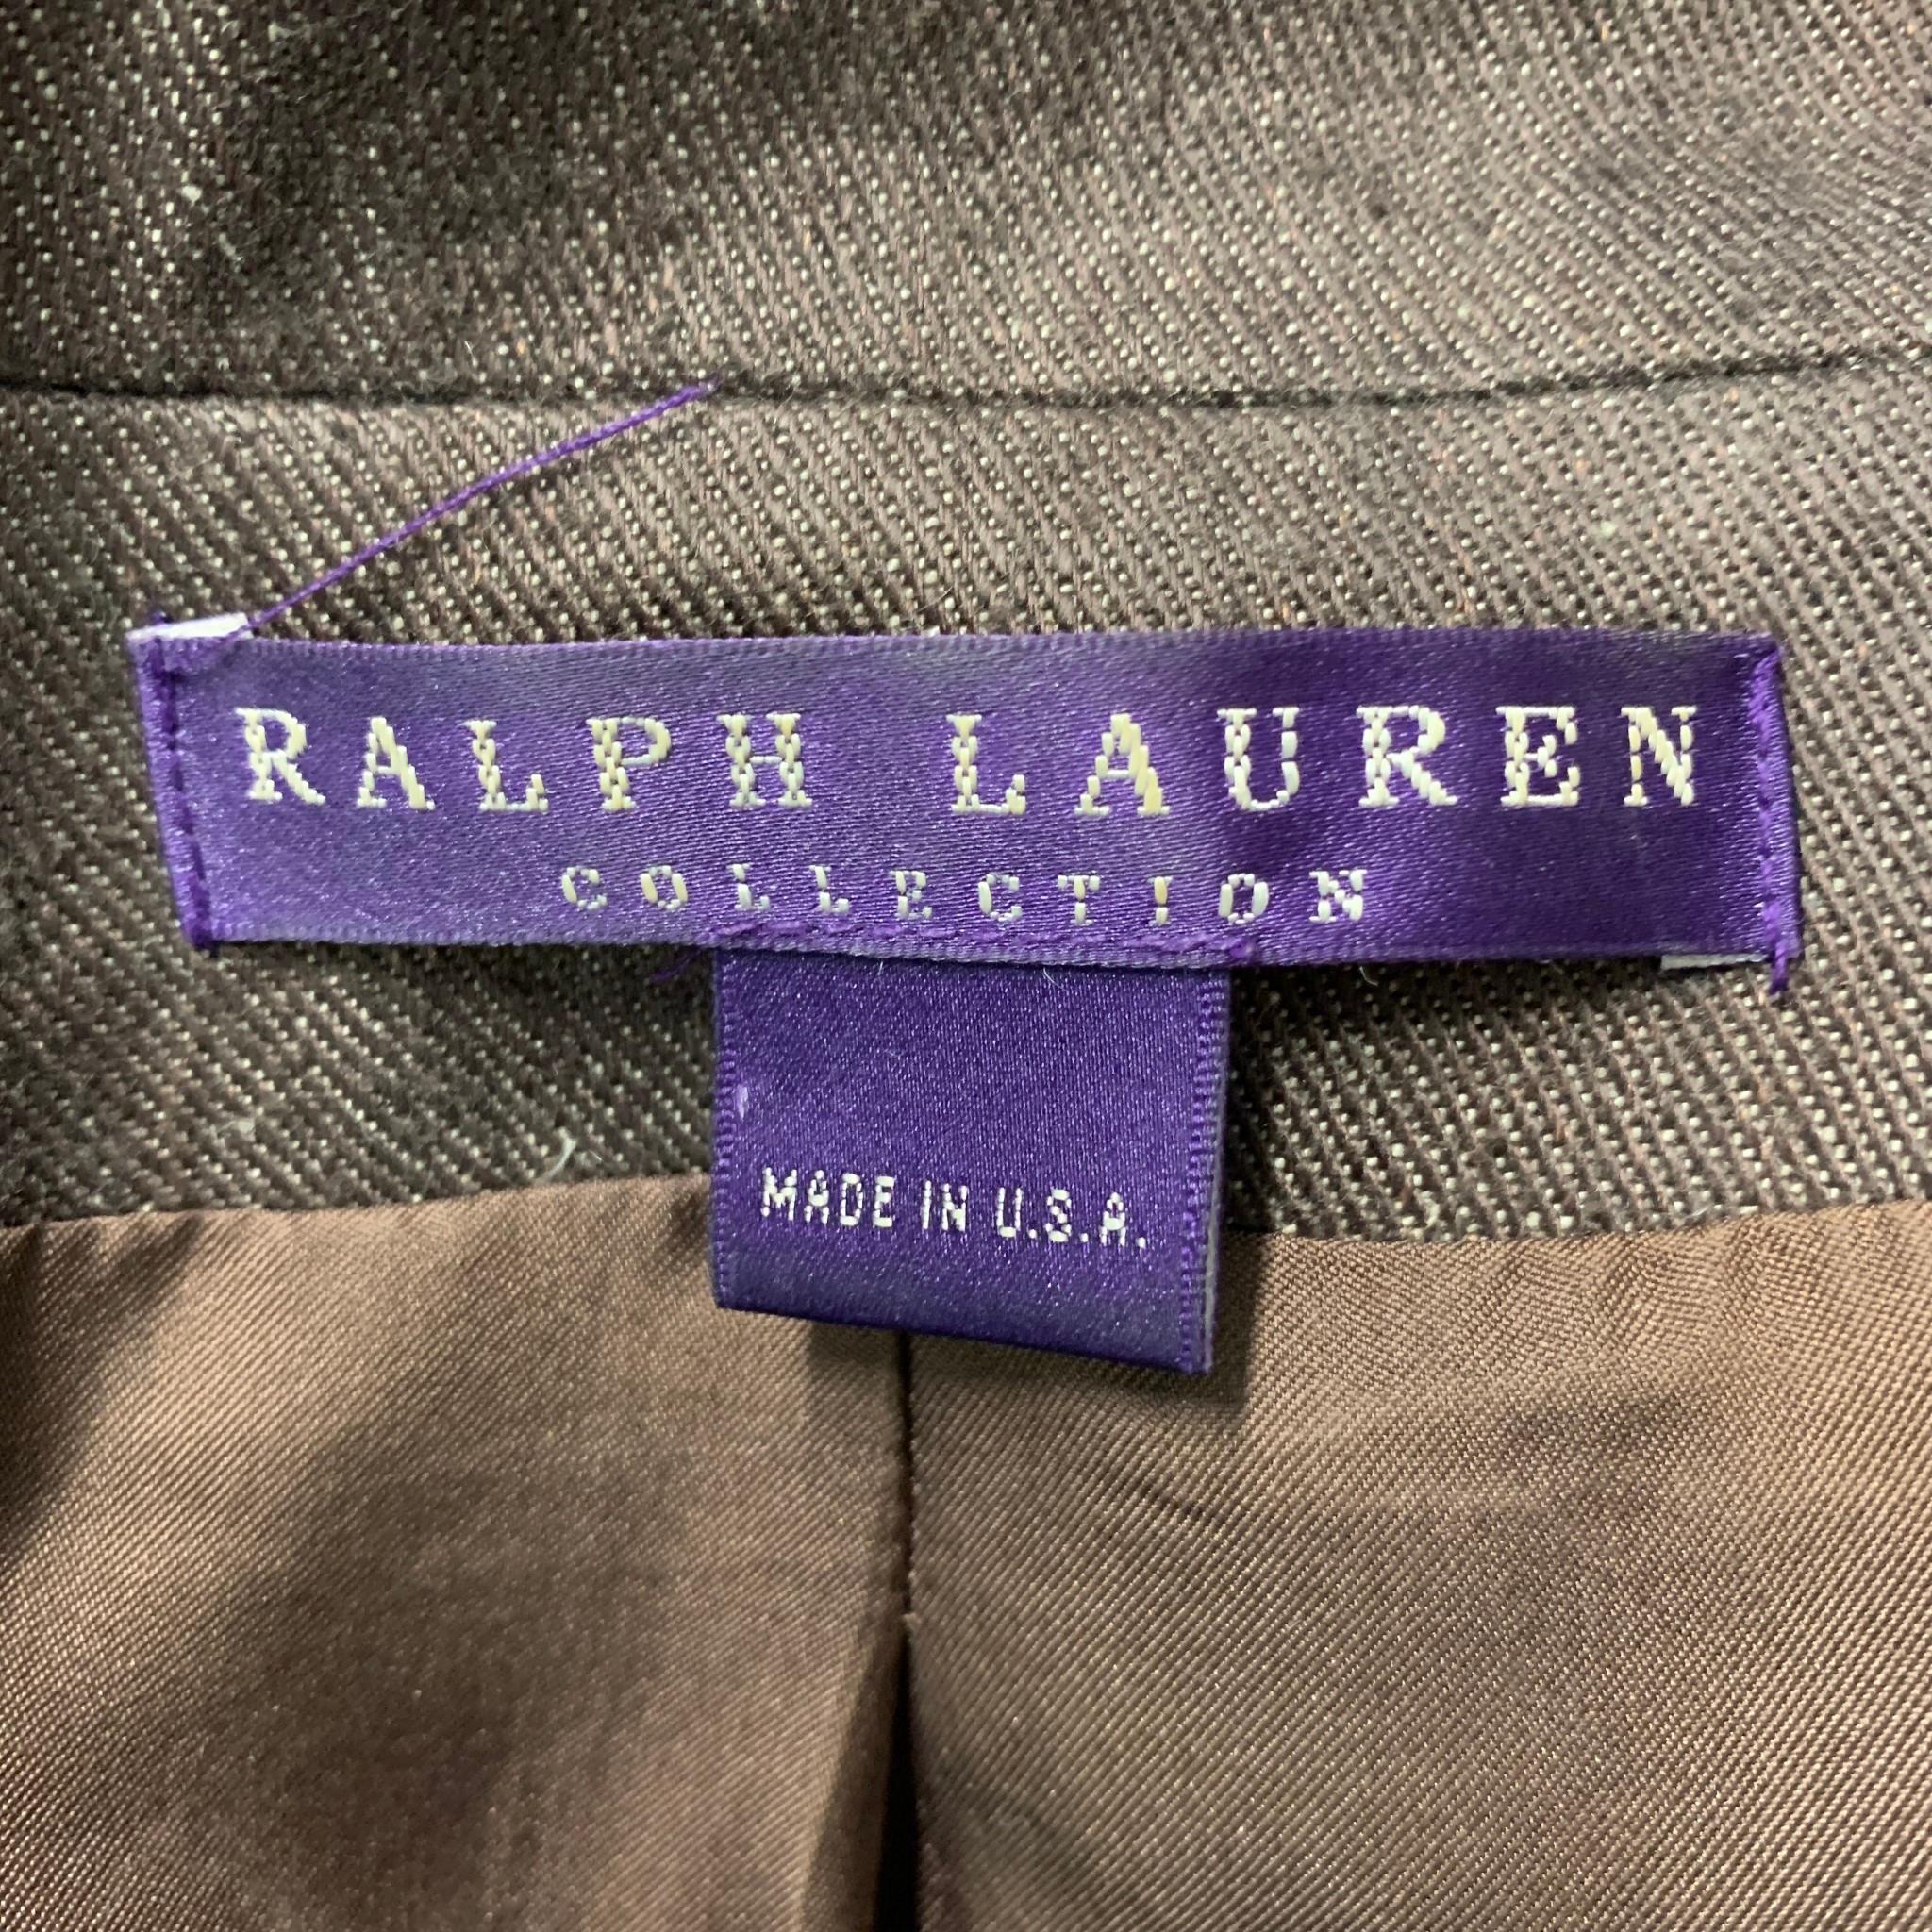 genuine ralph lauren label